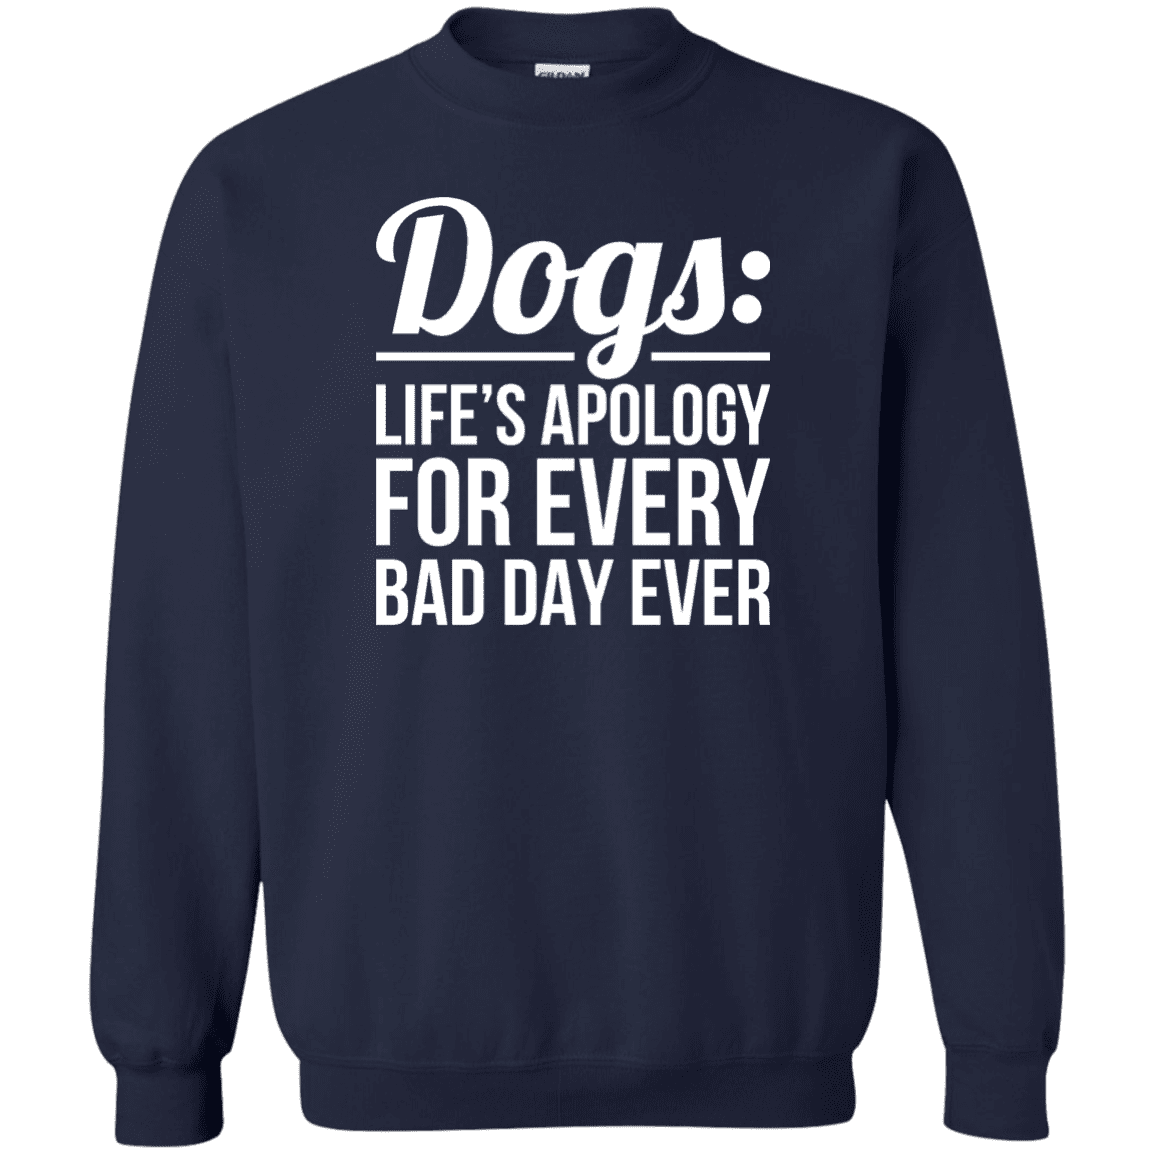 Dogs Life's Apology - Sweatshirt.